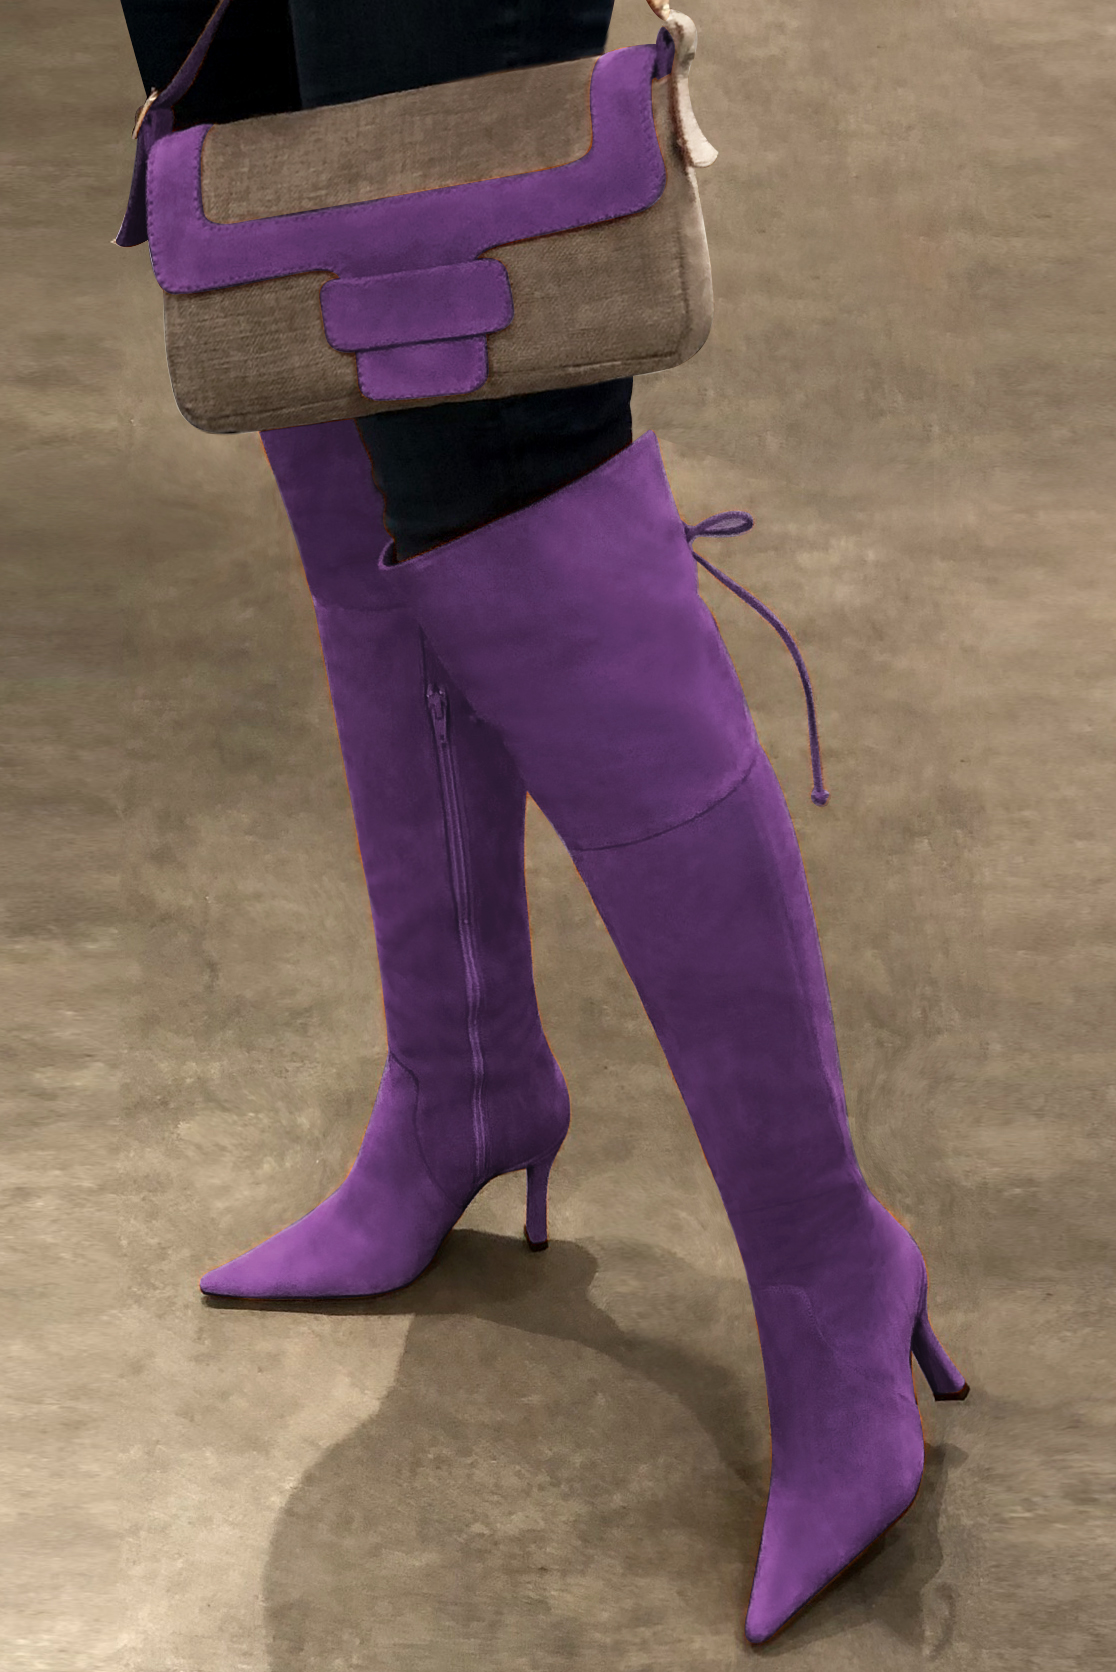 Caramel brown and amethyst purple women's dress handbag, matching pumps and belts. Worn view - Florence KOOIJMAN